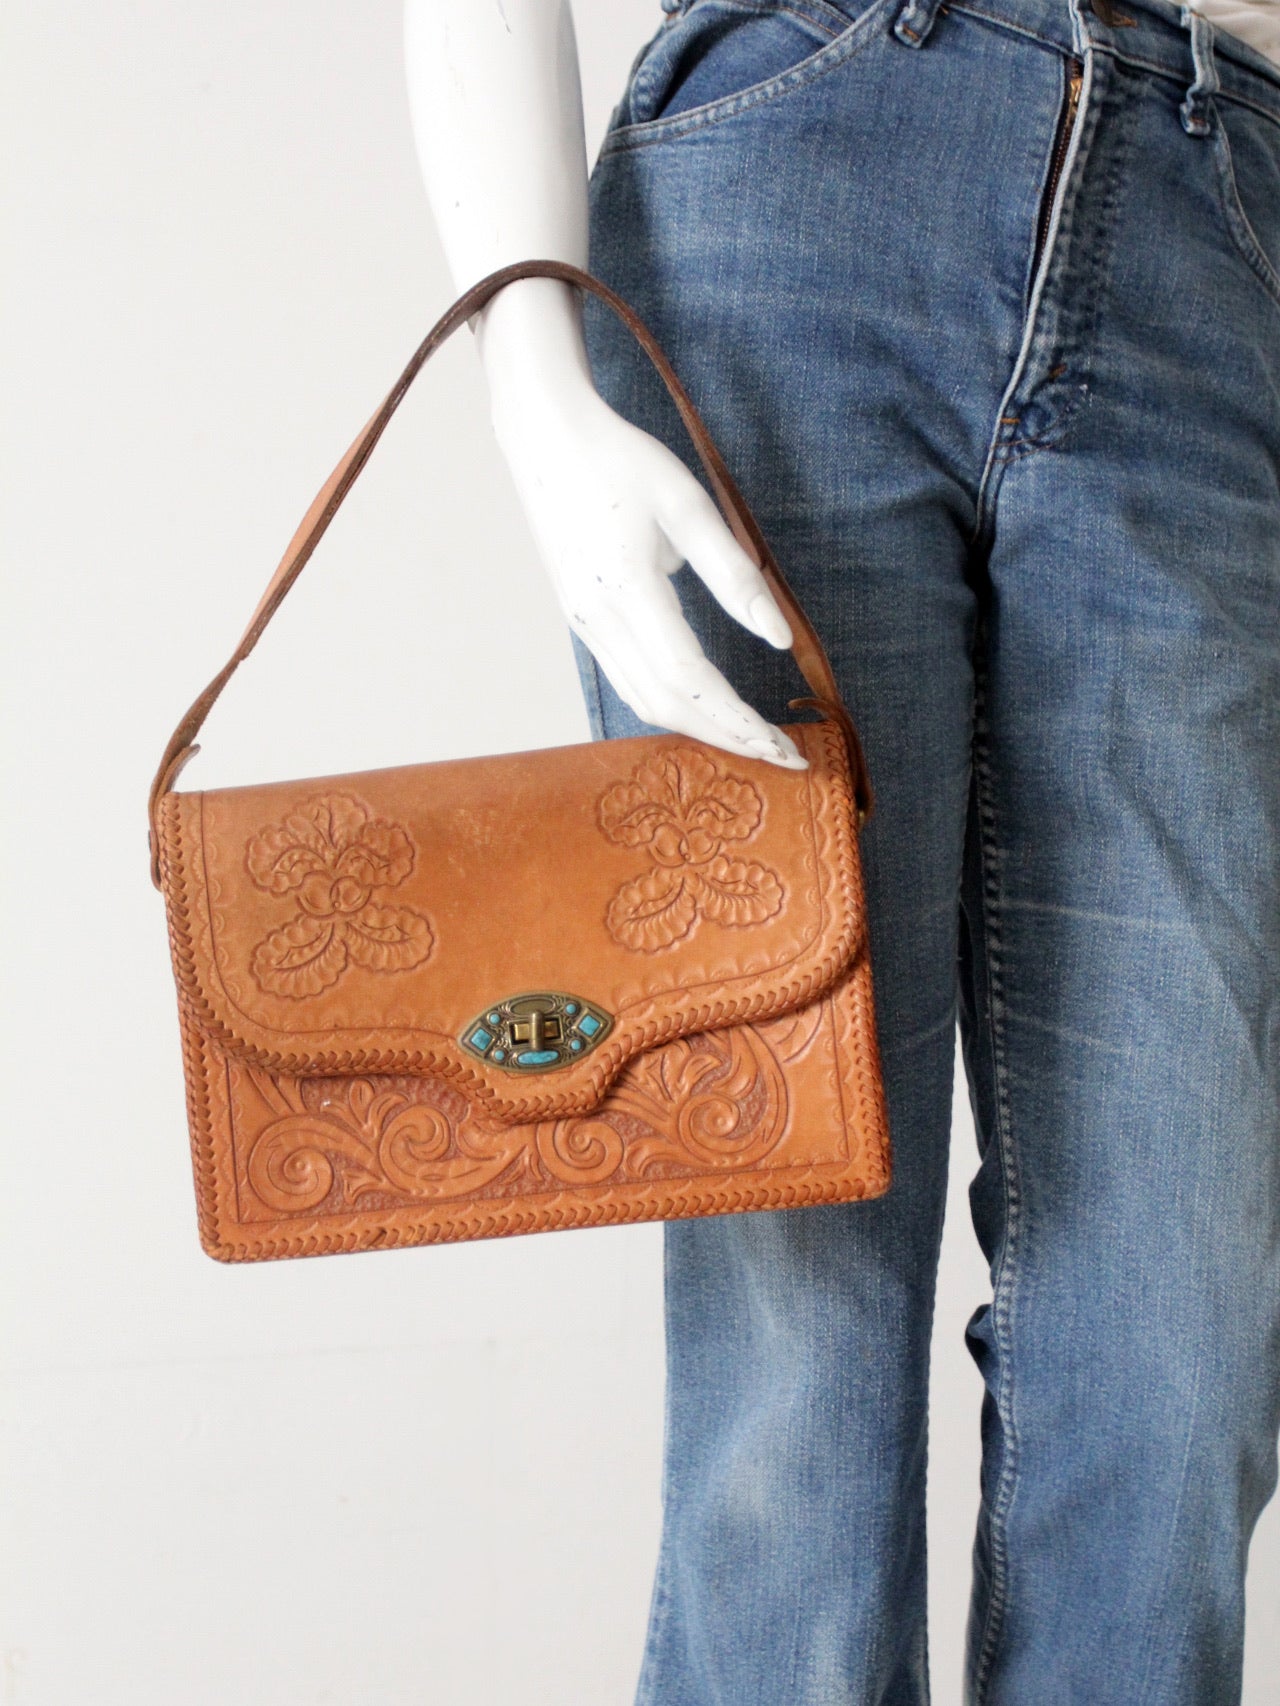 Buy Vintage Tooled Leather Shoulder Bag Online in India - Etsy